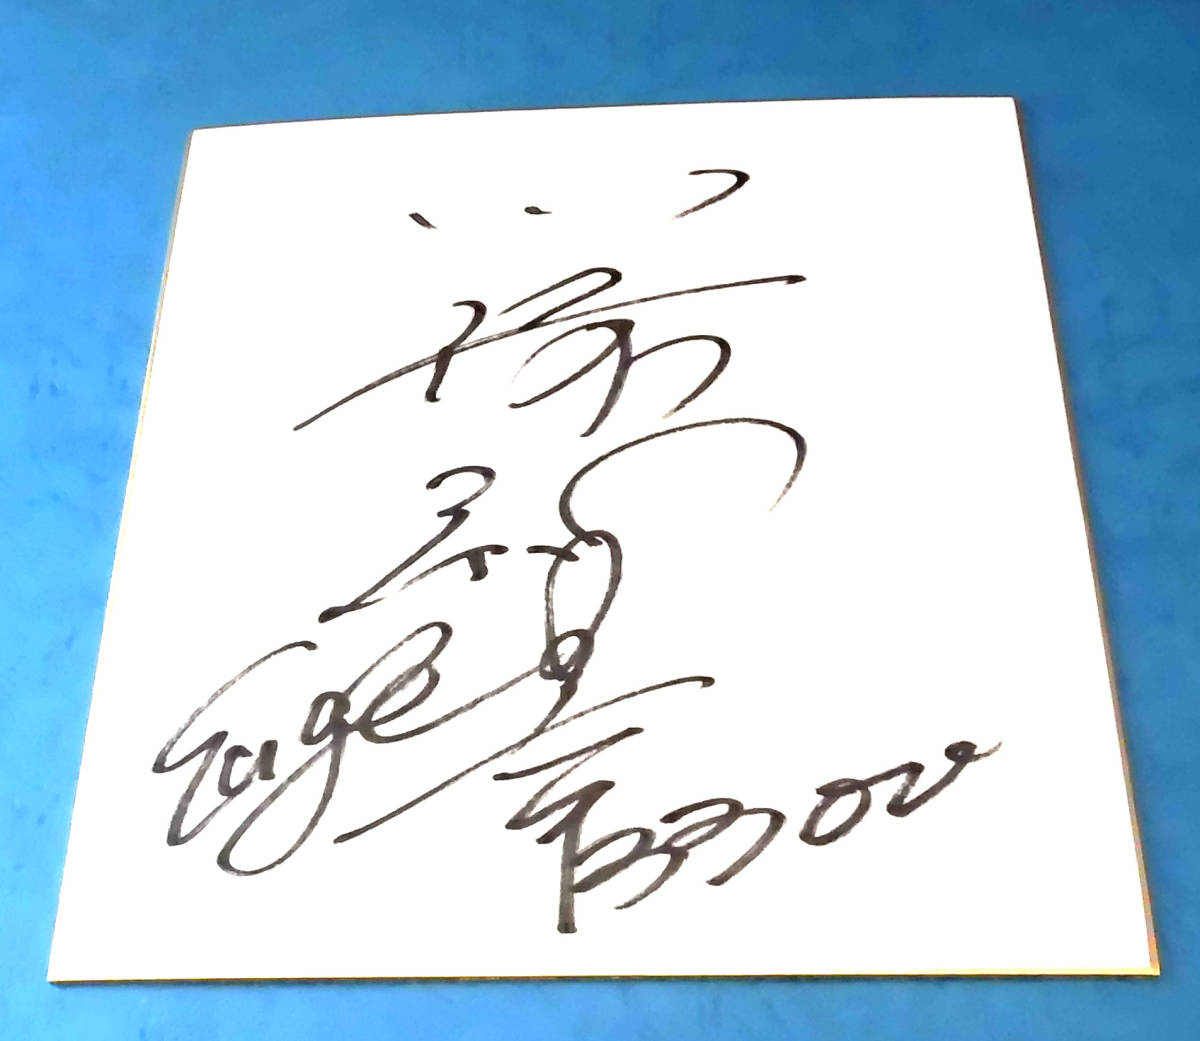 划船比赛 G1 冠军 川崎智之(冈山) 亲笔签名彩纸和亲笔签名 T 恤 划船比赛, 运动的, 闲暇, 划船比赛, 其他的